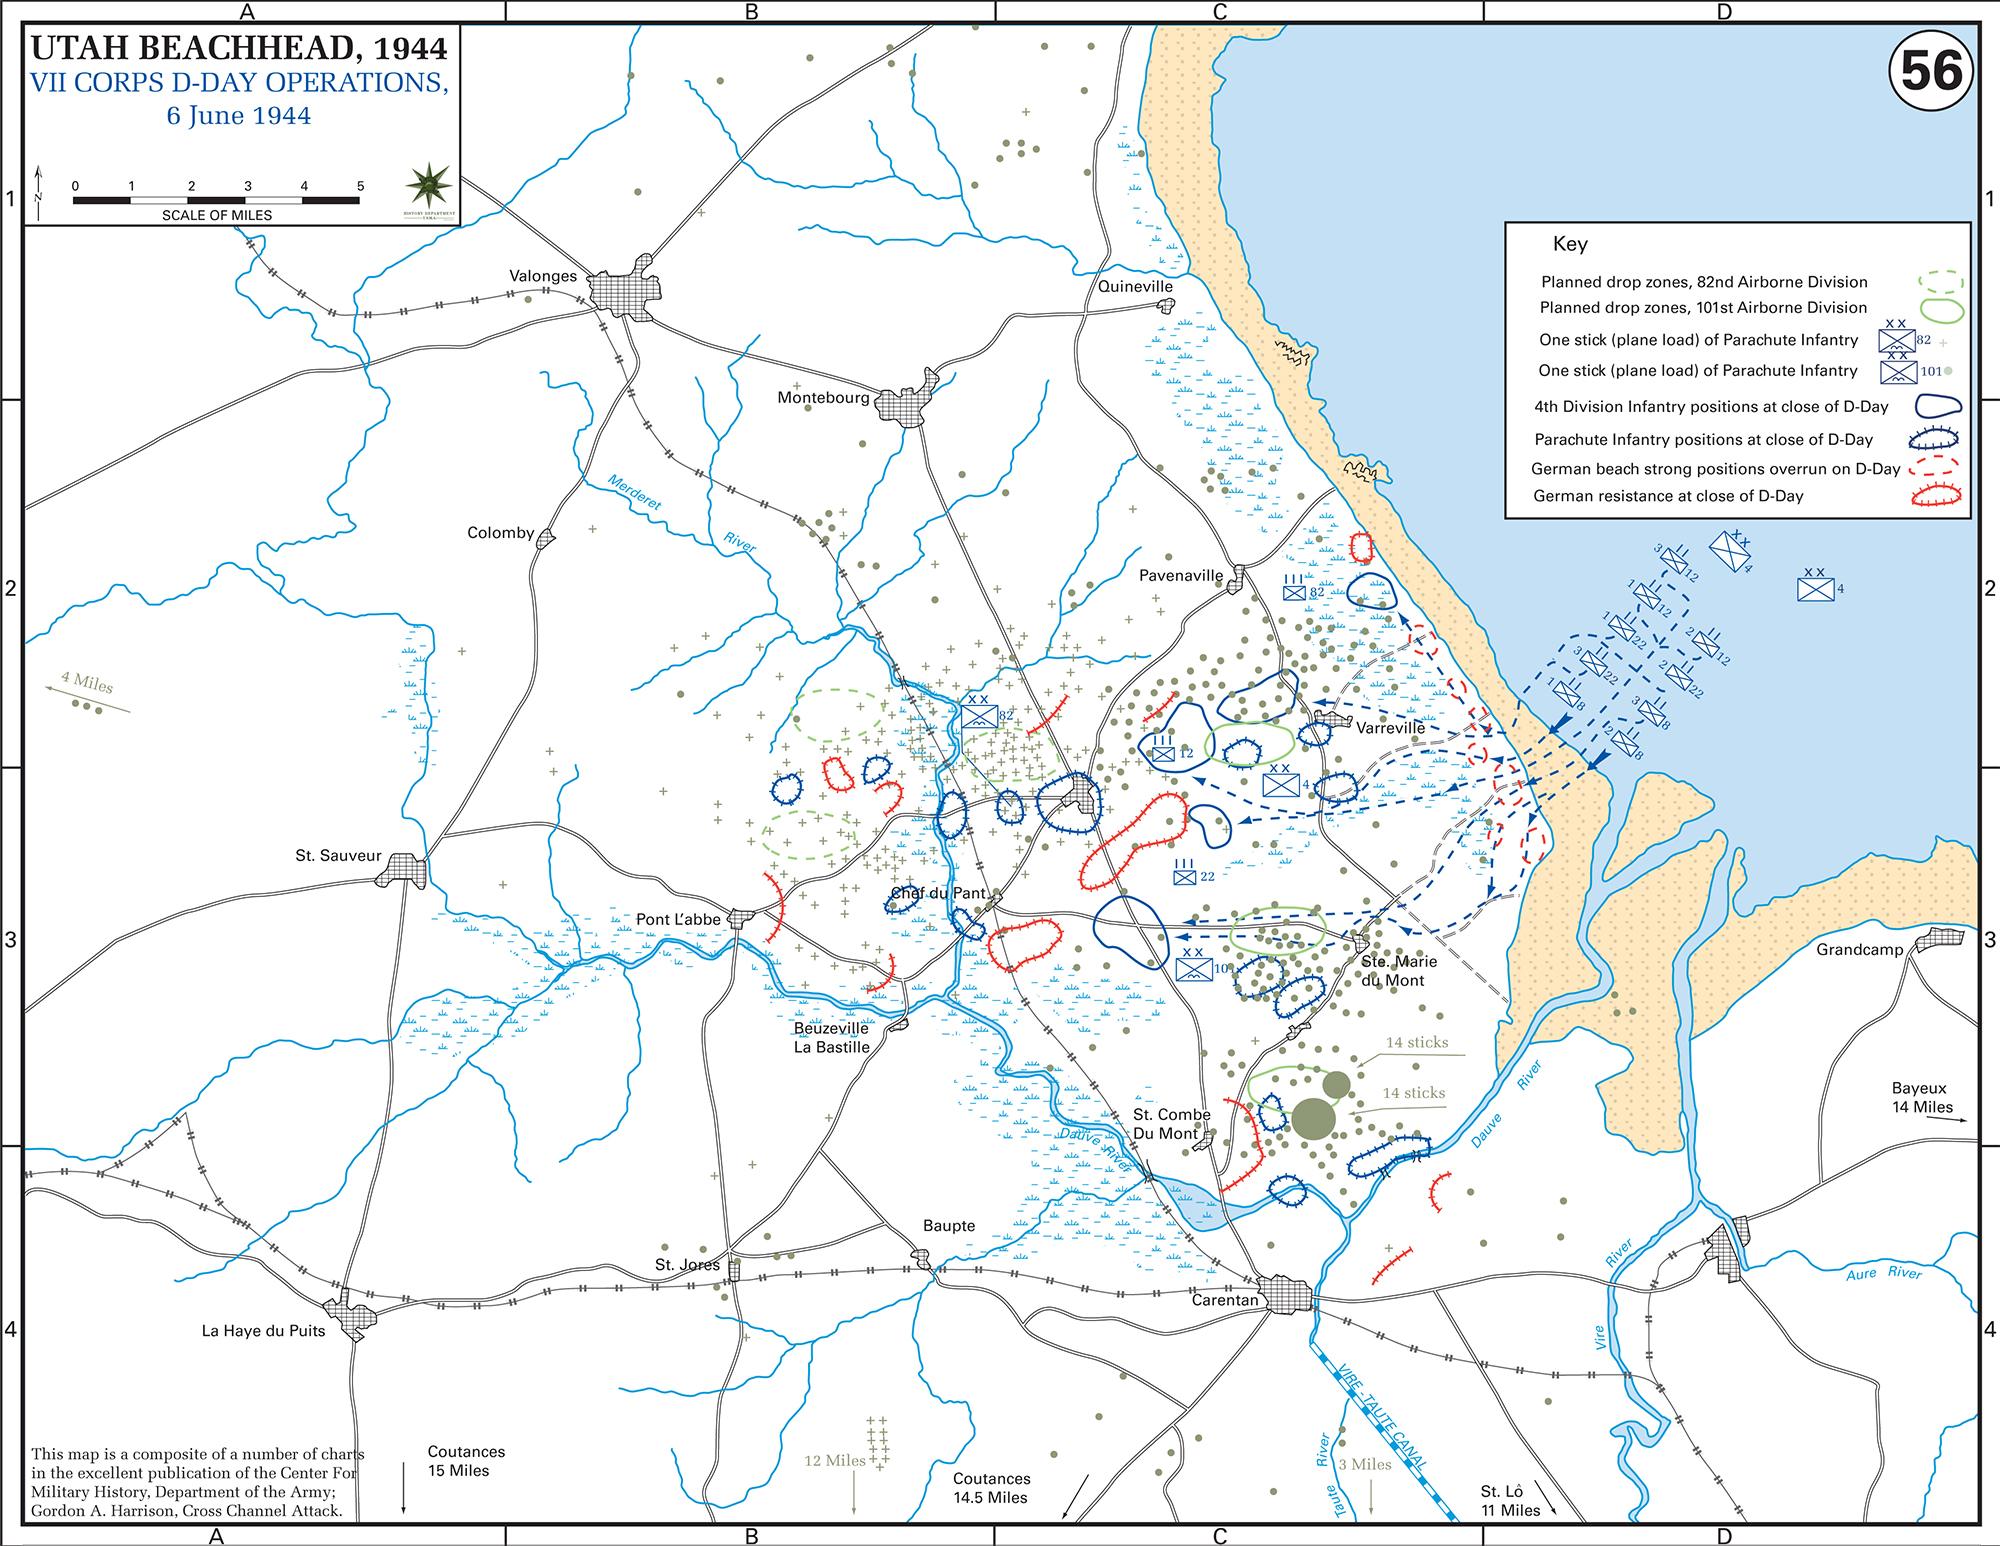 Map of WWII: UTAH Beachhead D-Day June 6, 1944